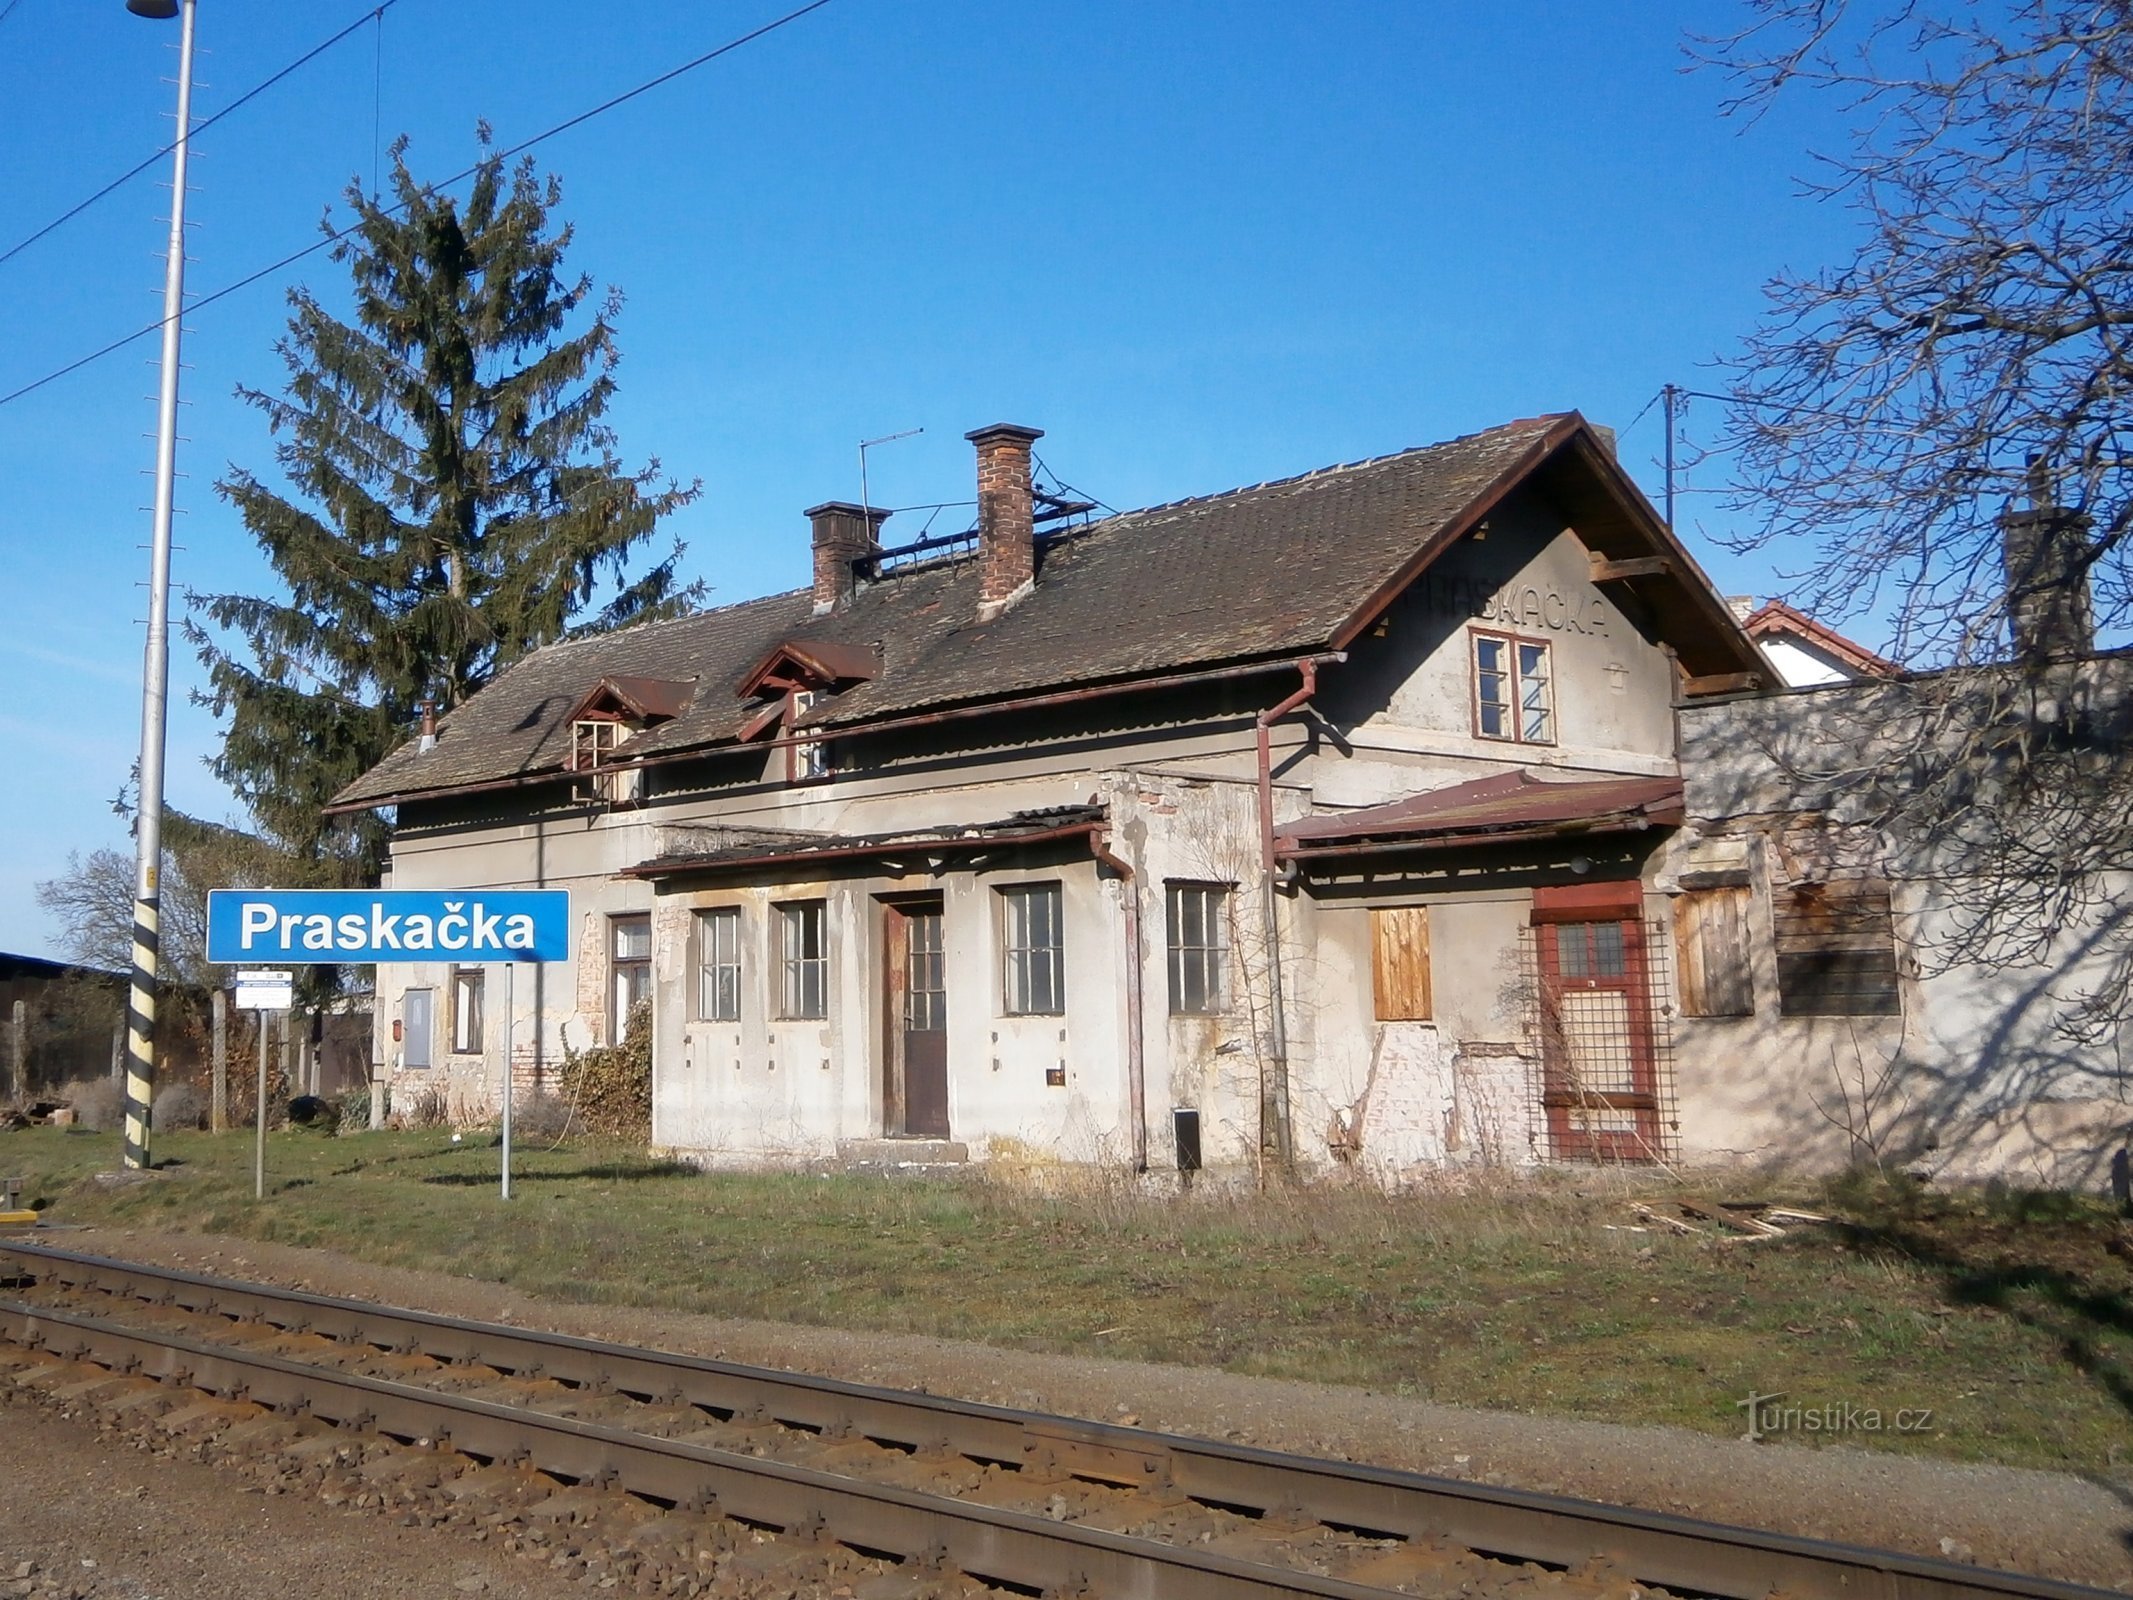 Het oude treinstation in Praskačka